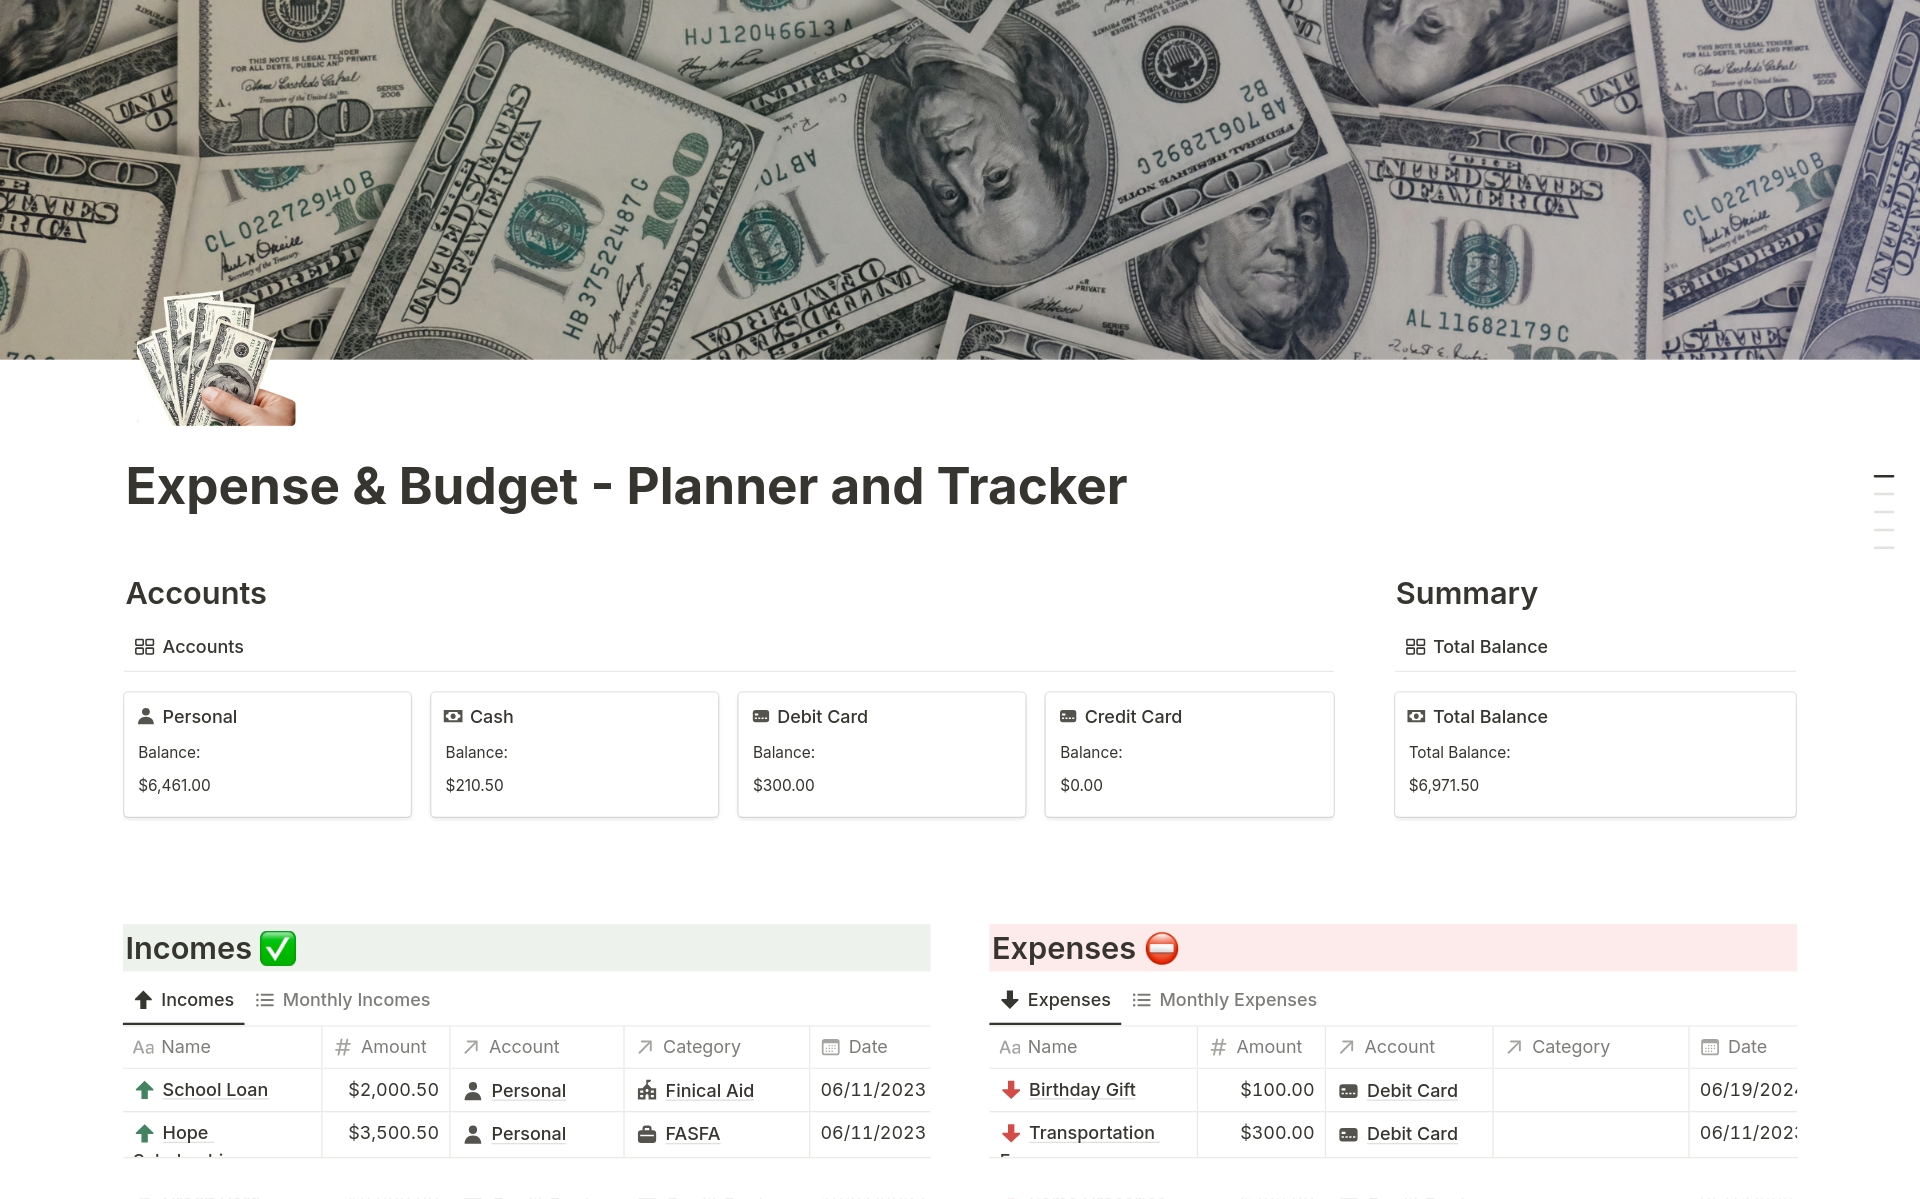 Expense & Budget - Planner and Tracker님의 템플릿 미리보기